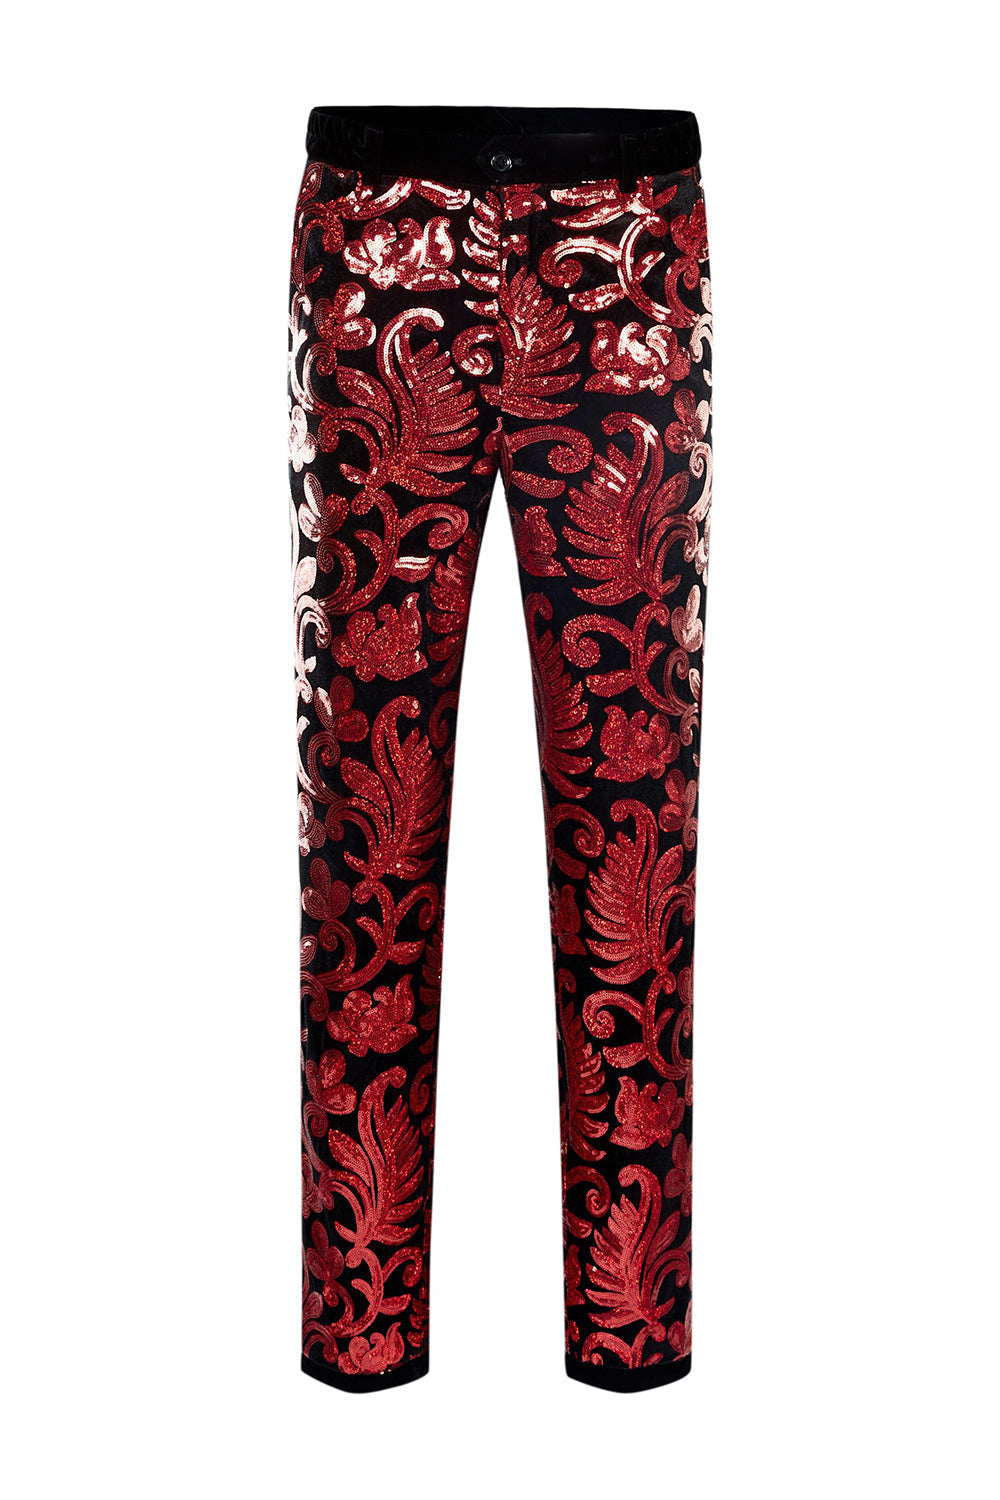 Red Sequins Floral Pattern Men's 2 Pieces Suits